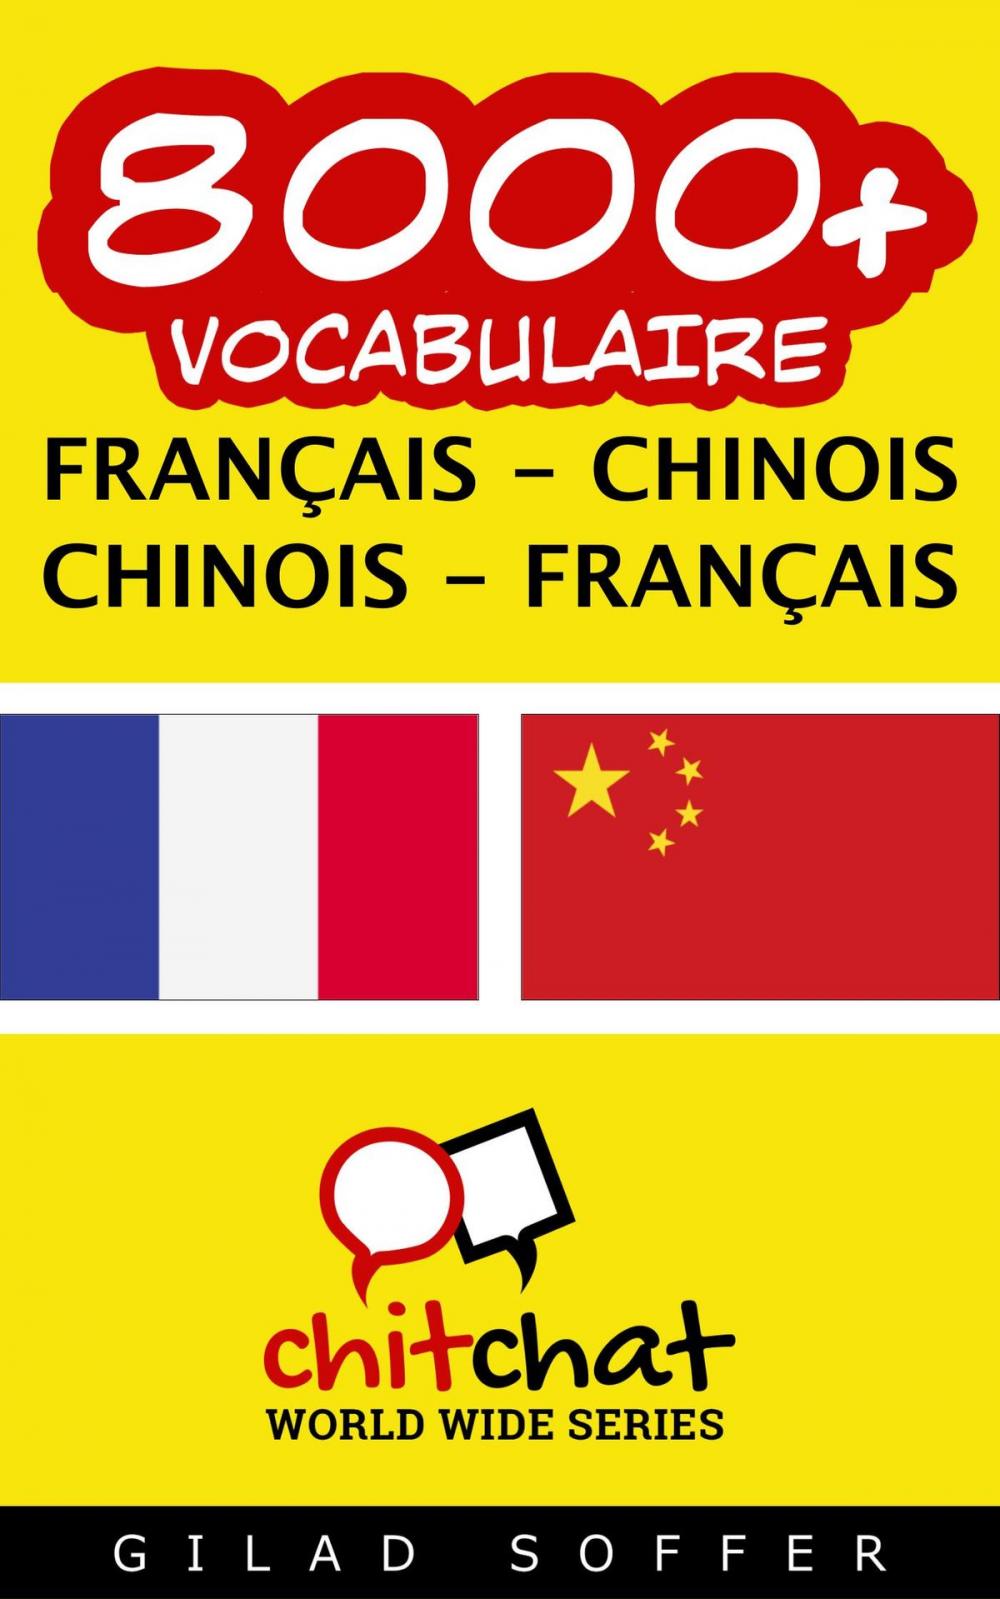 Big bigCover of 8000+ vocabulaire Français - Chinois